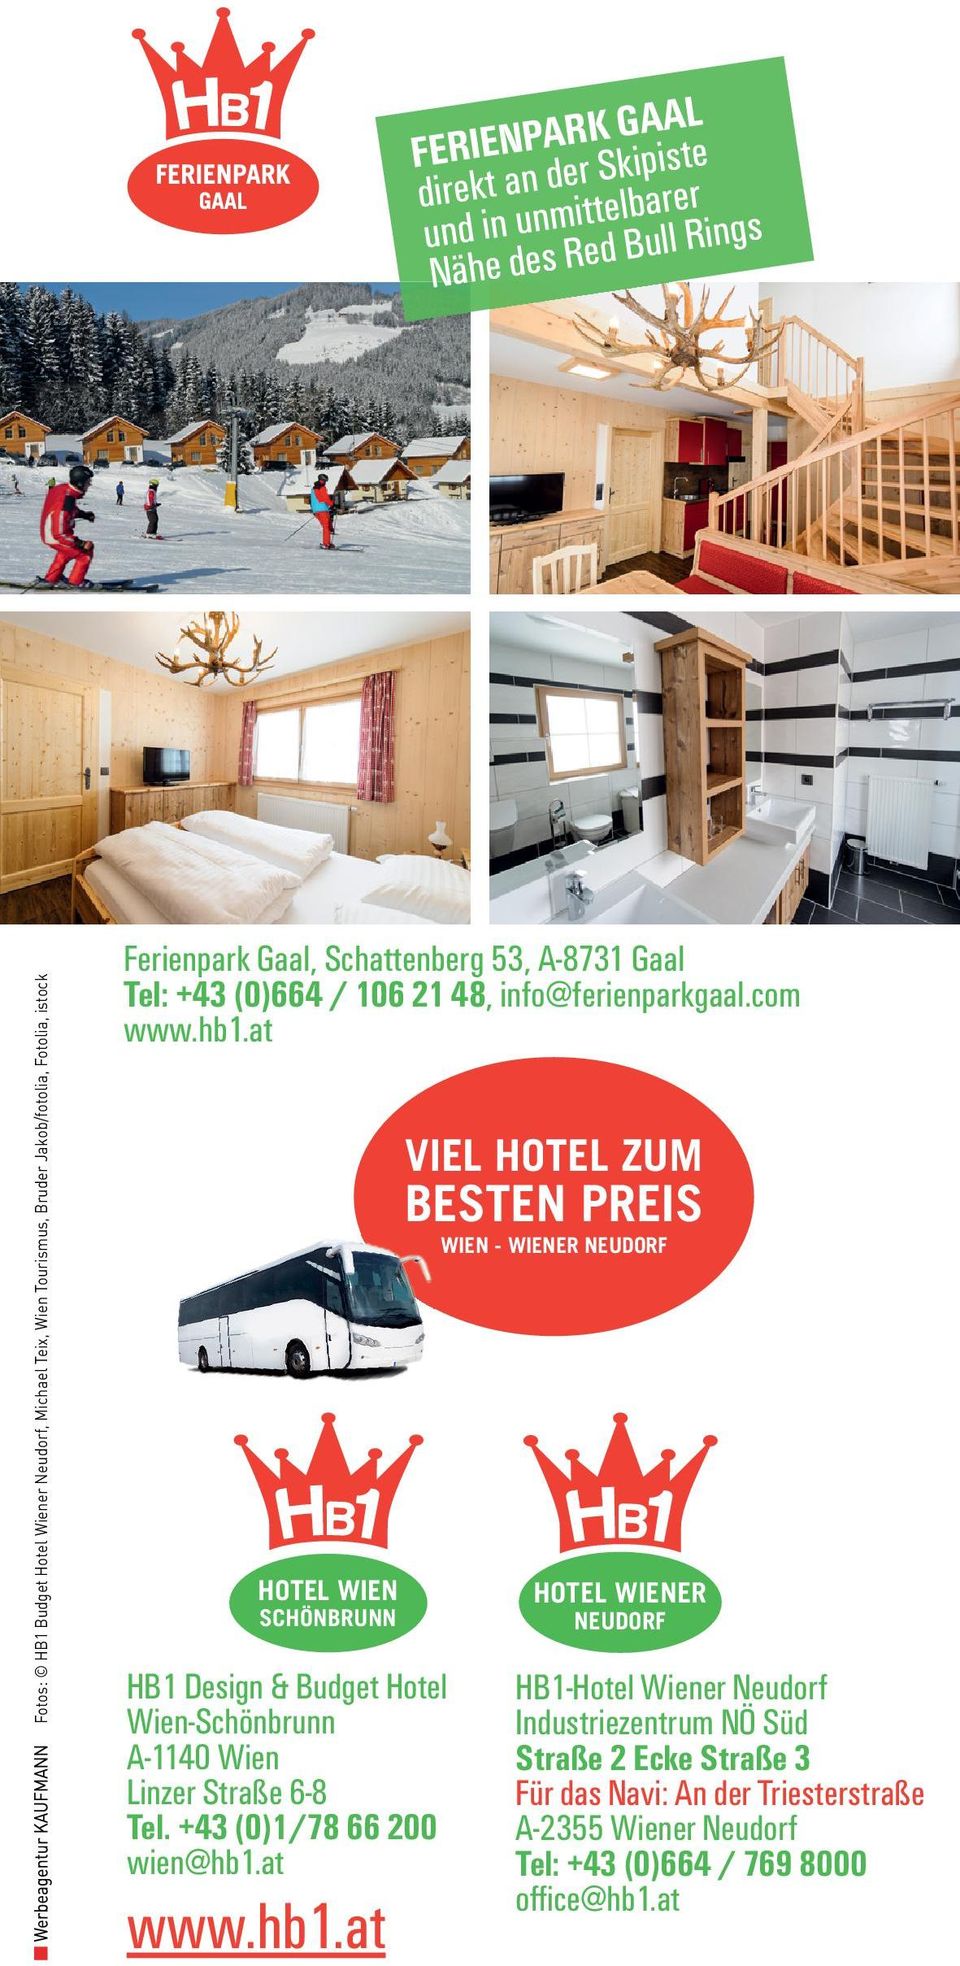 at HOTEL WIEN SCHÖNBRUNN HB1 Design & Budget Hotel Wien-Schönbrunn A-1140 Wien Linzer Straße 6-8 Tel. +43 (0)1/78 66 200 wien@hb1.